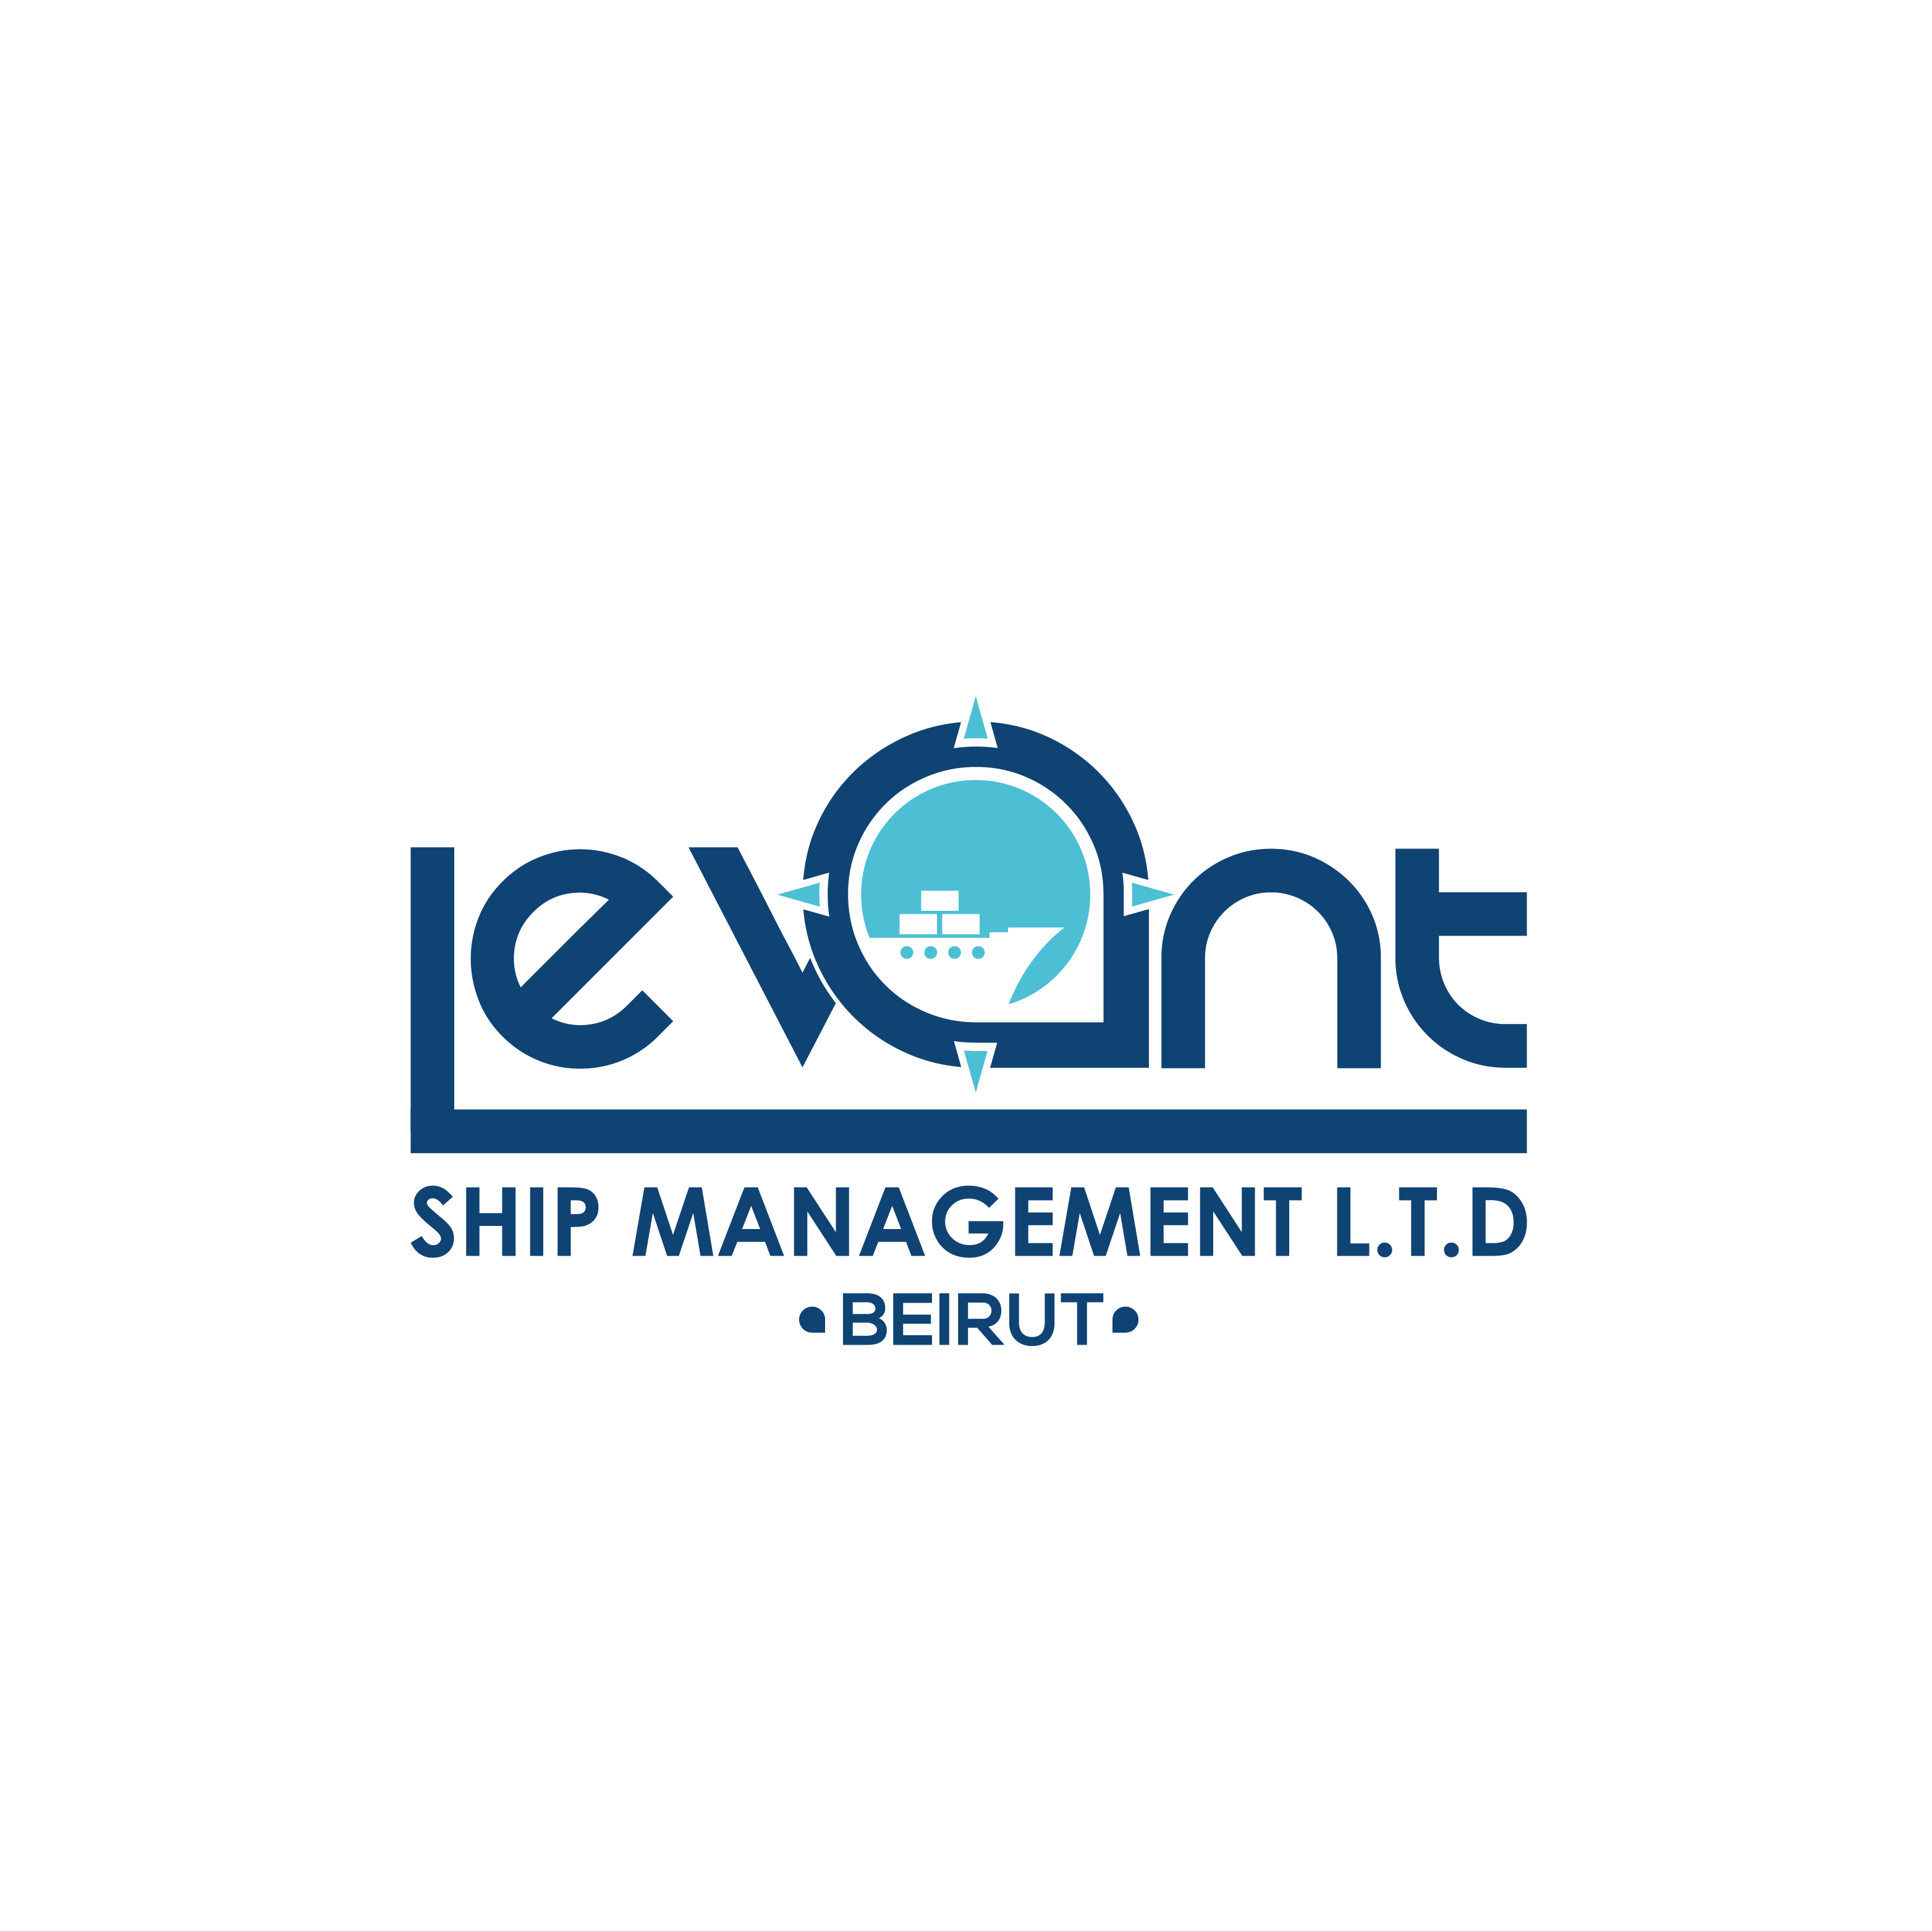 Levant Ship Management L.T.D